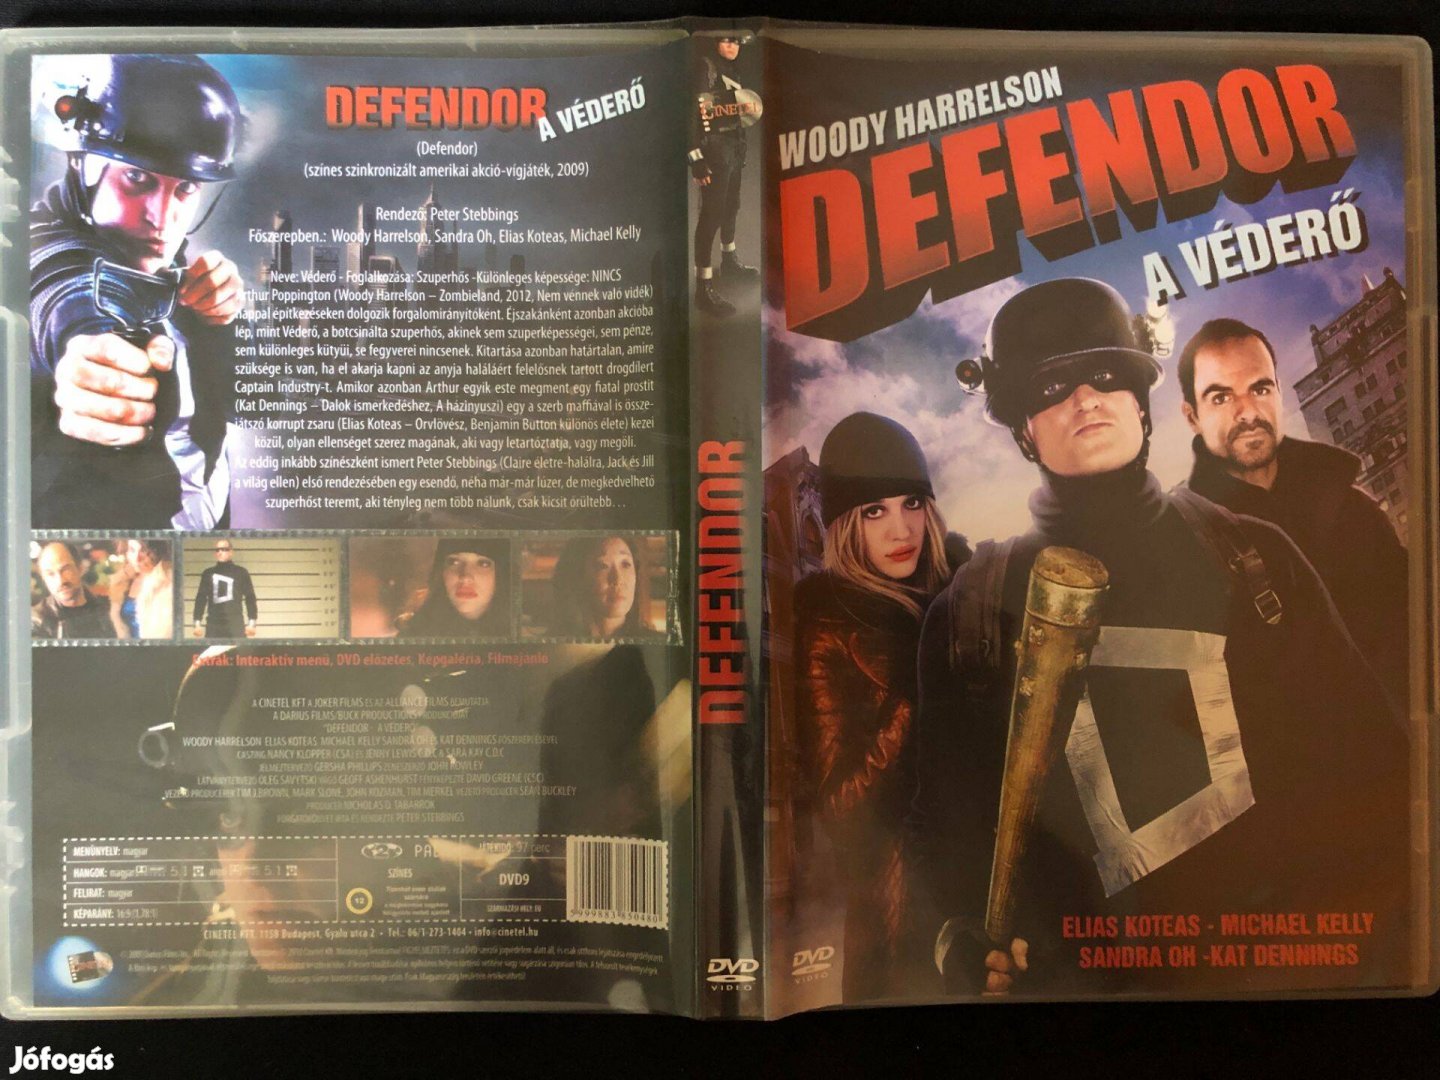 Defendor A védőerő (karcmentes, Woody Harrelson, Elias Koteas) DVD